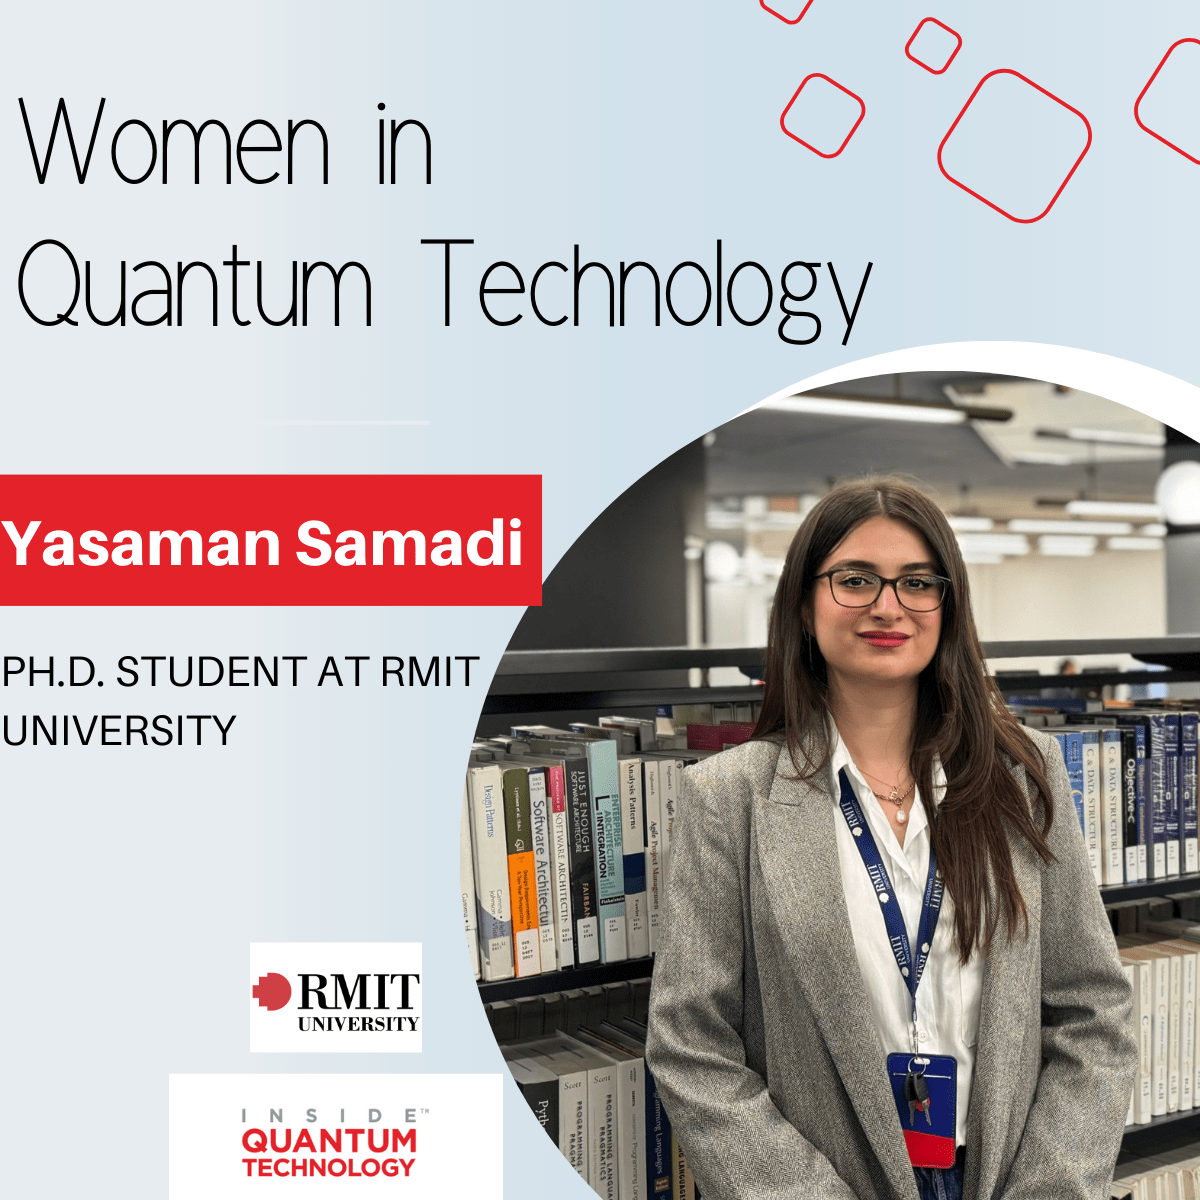 ヤサマン・サマディ博士。 RMIT 大学の学生であり、量子コンピューティングとサイバーセキュリティに対する情熱を共有しています。